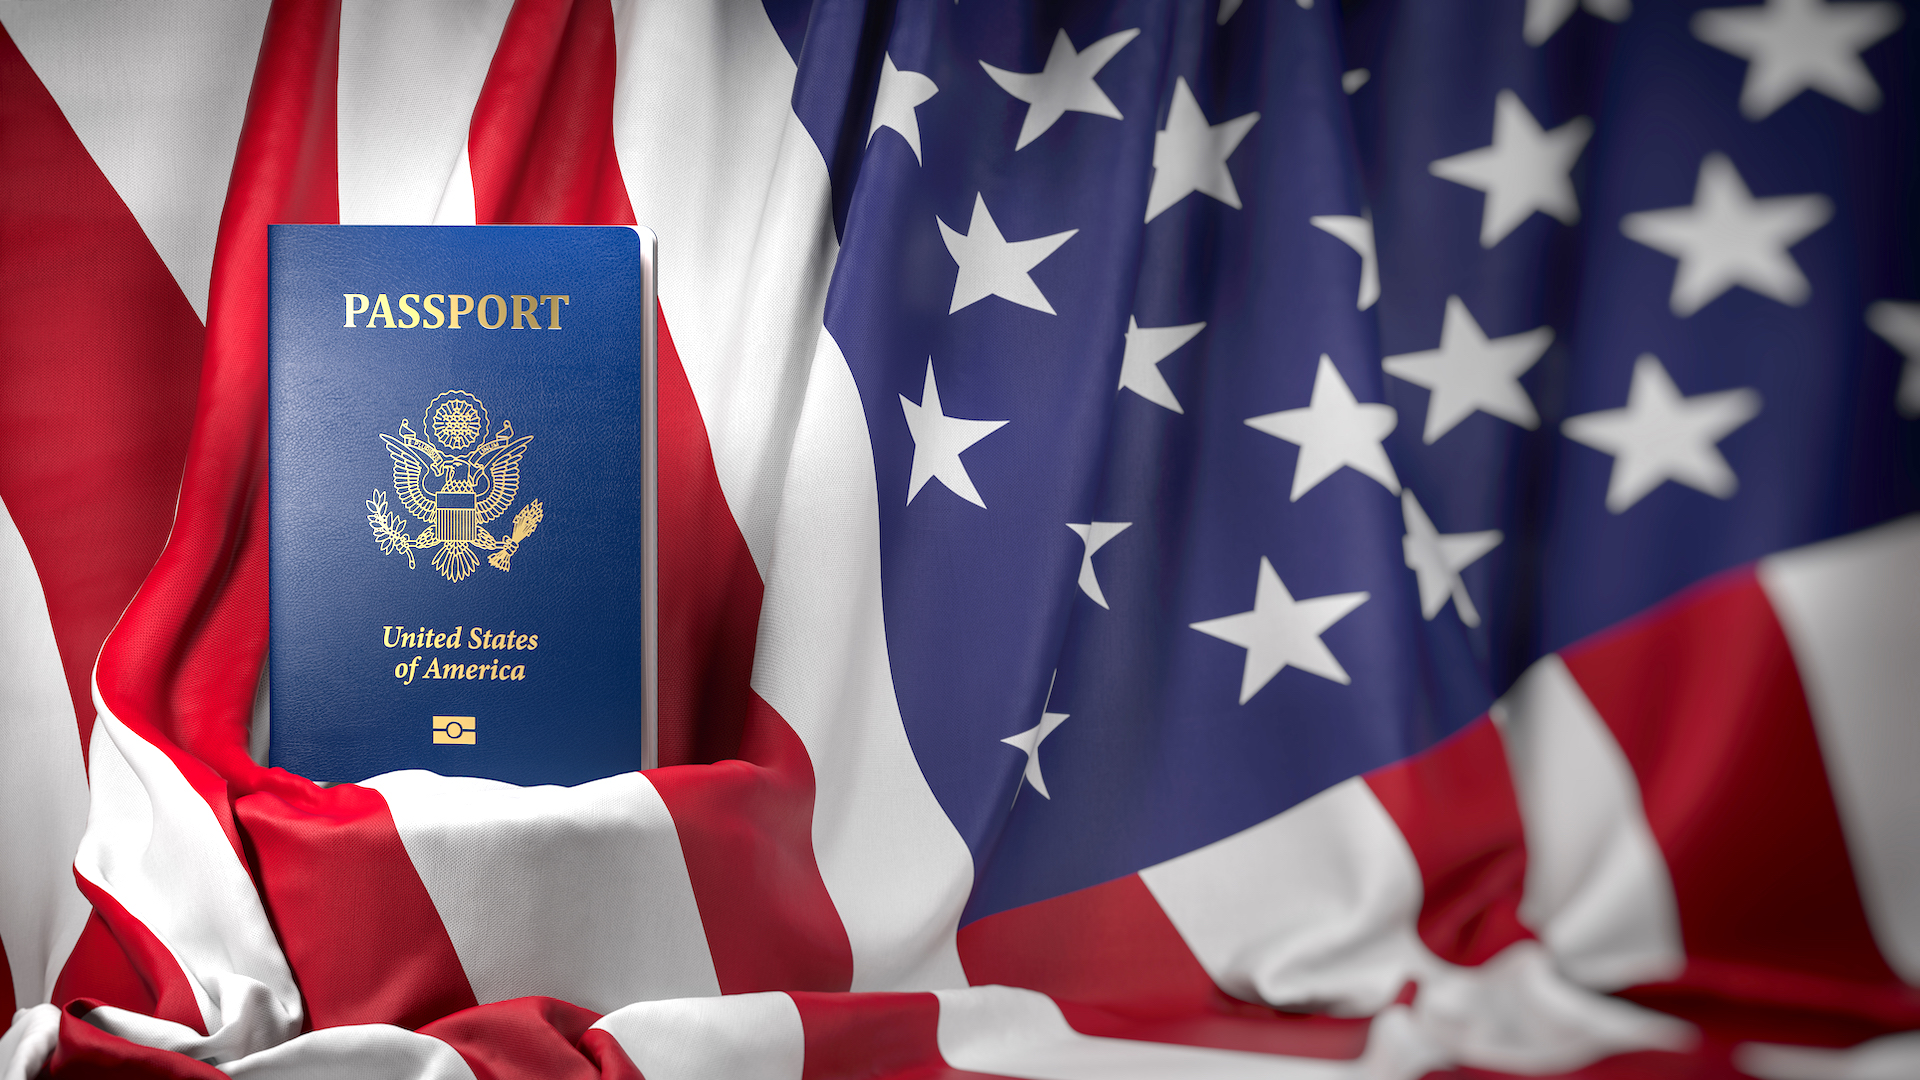 ¿Cómo saber si eres uno de los ganadores del sorteo de visas de Estados